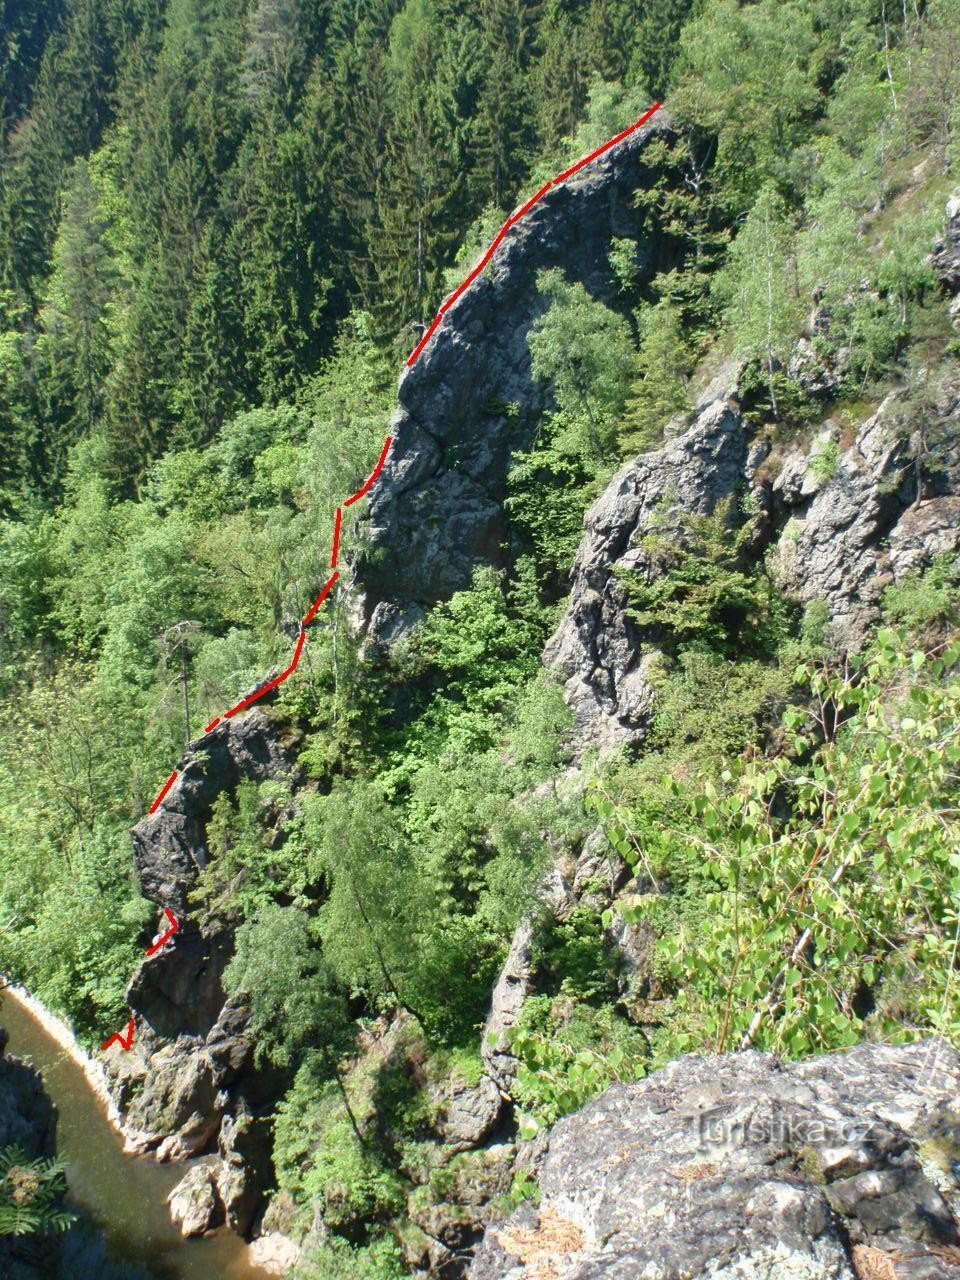 näkymä kalliolle; Lähde: www.lesycr.cz